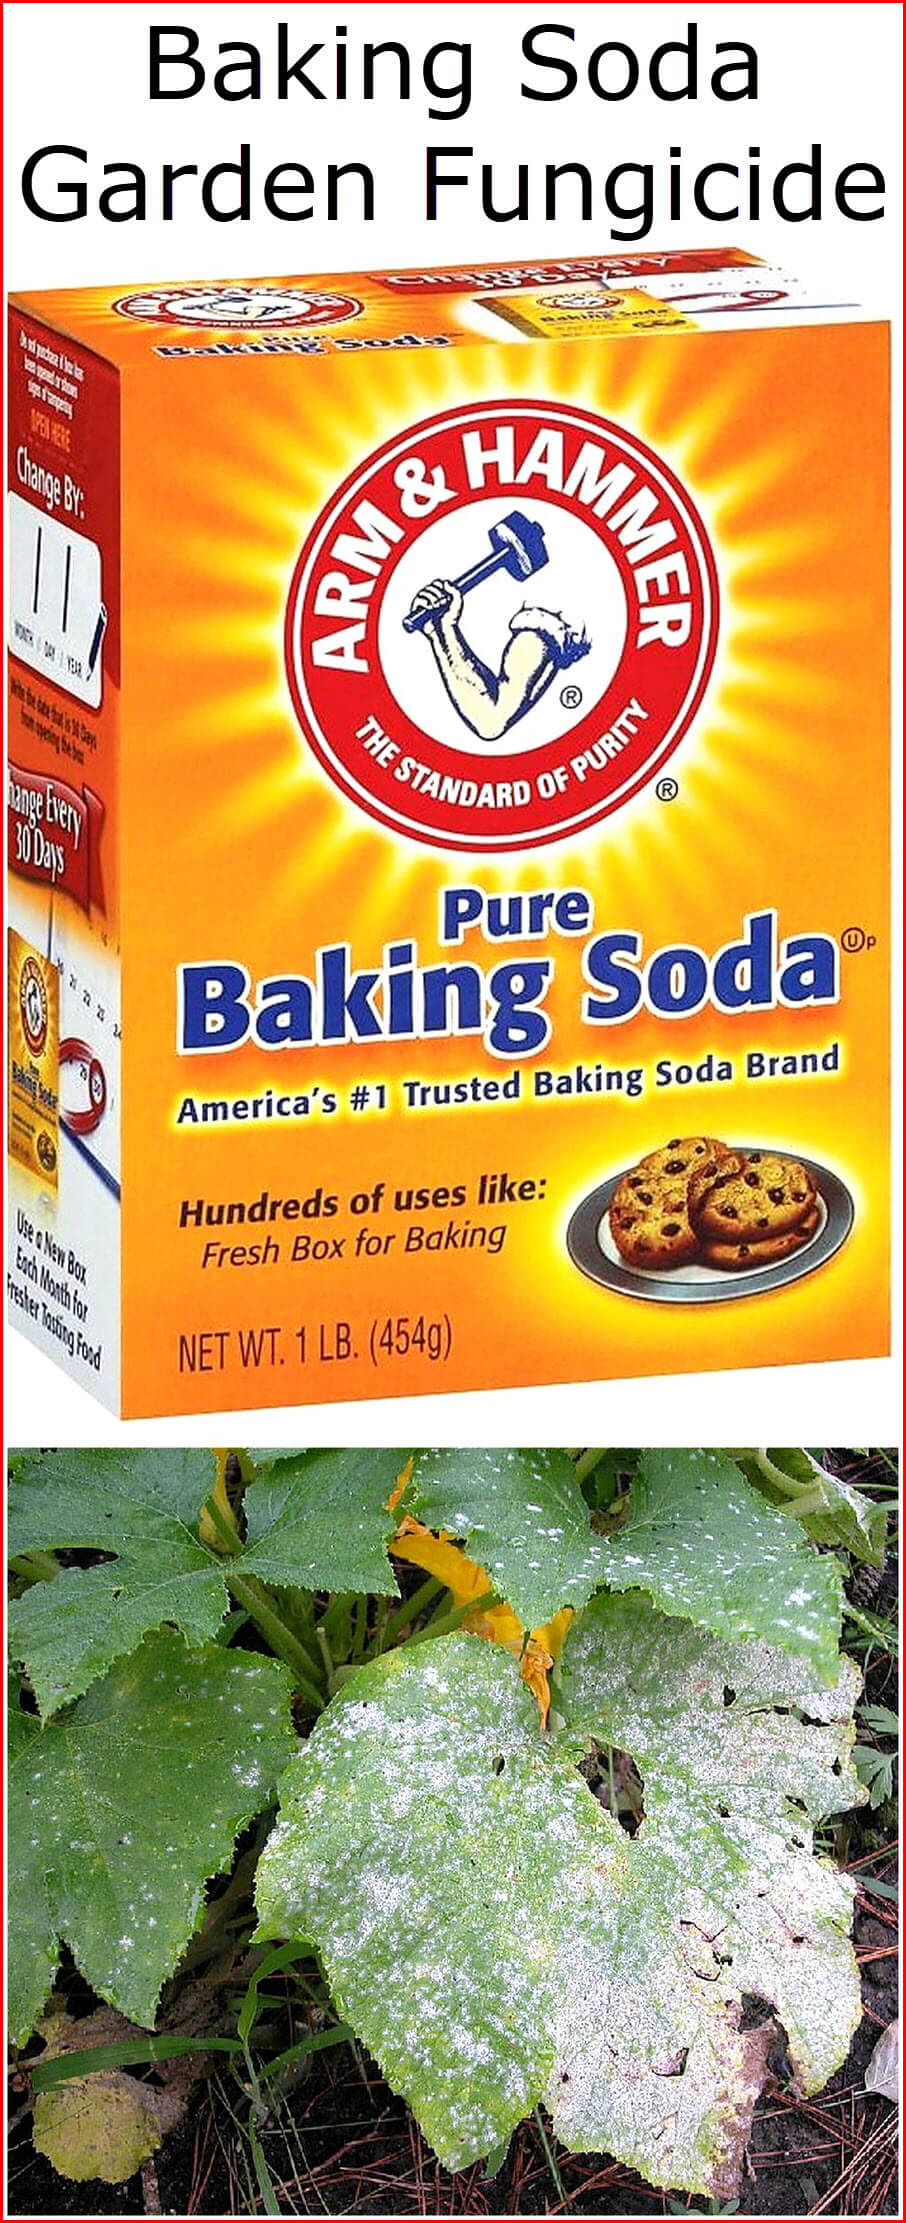 Baking Soda Garden Fungicide Baking Soda Uses and DIY